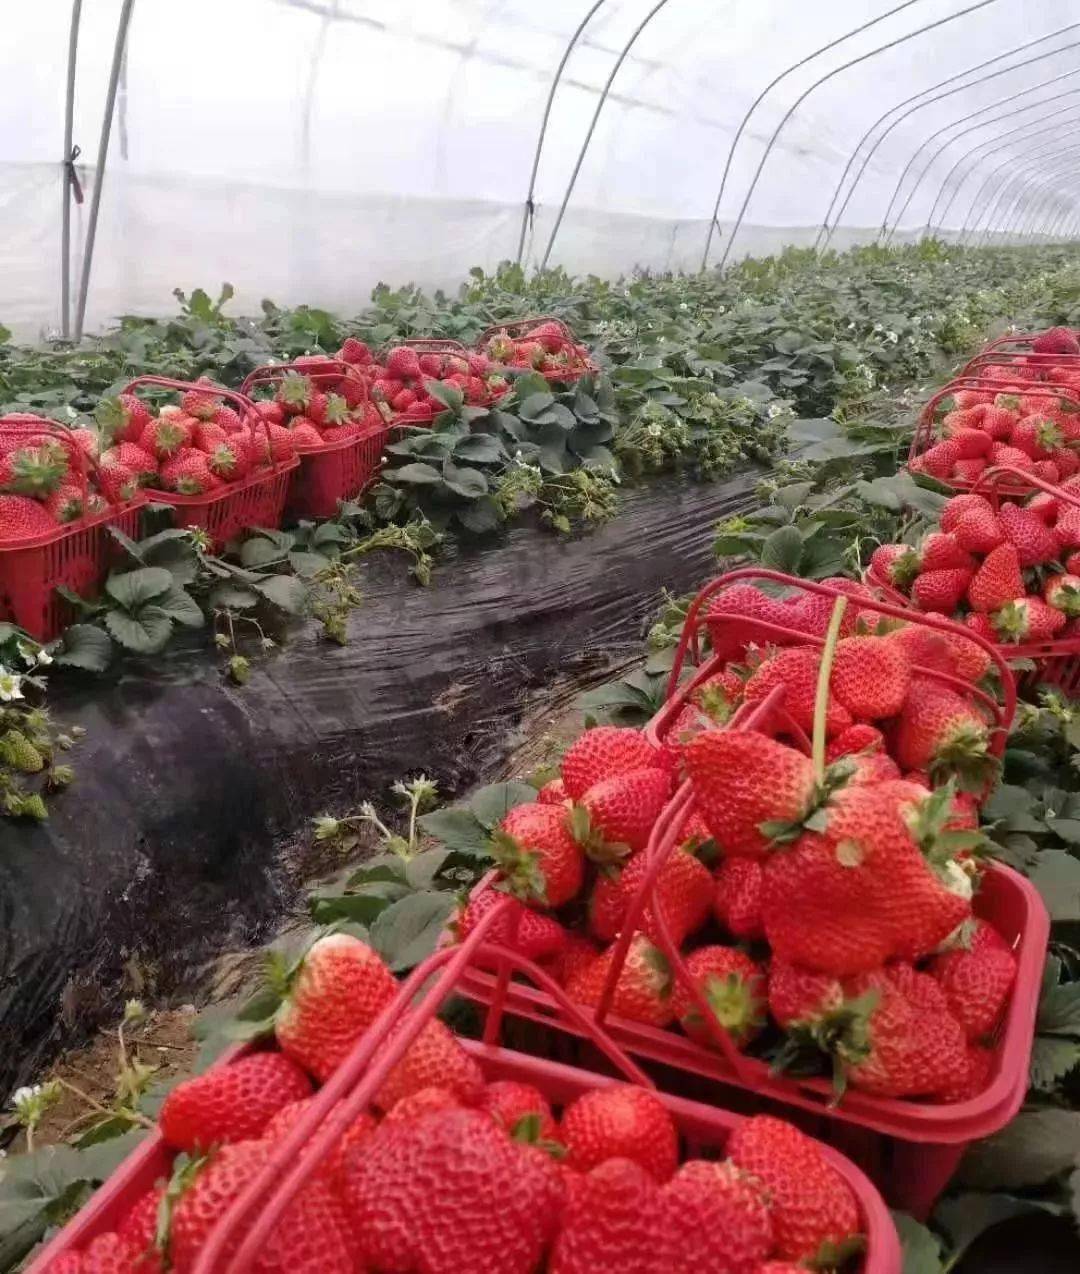 【采摘季】摘草莓大作战,许昌周边的草莓园已集合完毕!